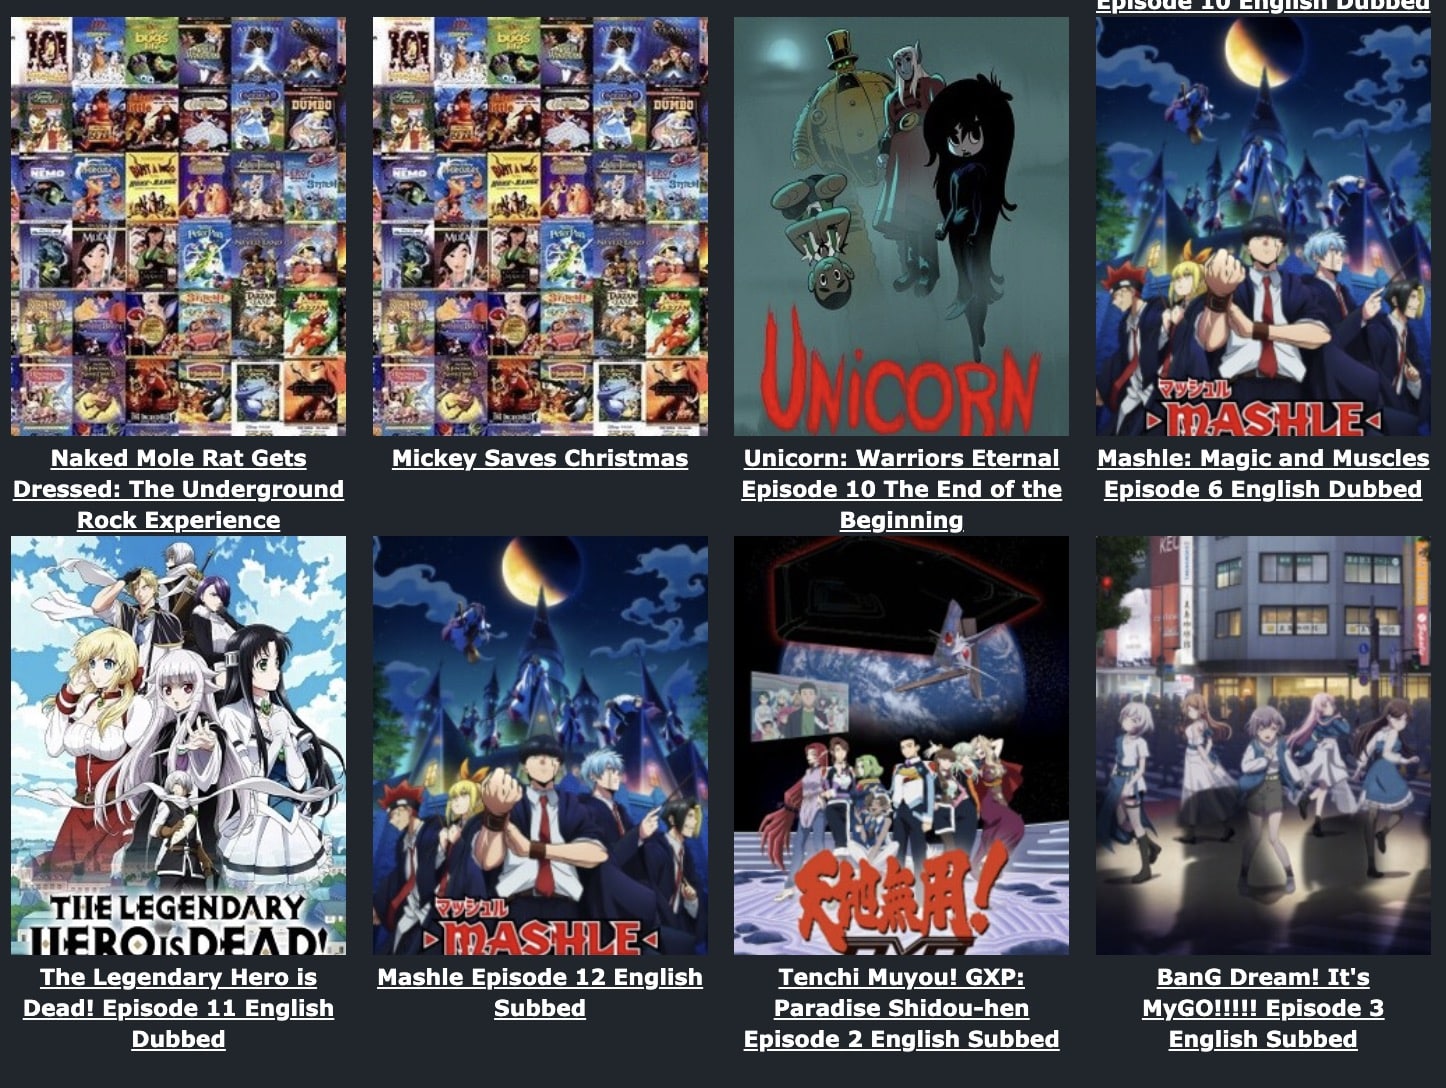 WCOFUN: La forma más fácil de ver anime, dibujos animados y películas legales en streaming